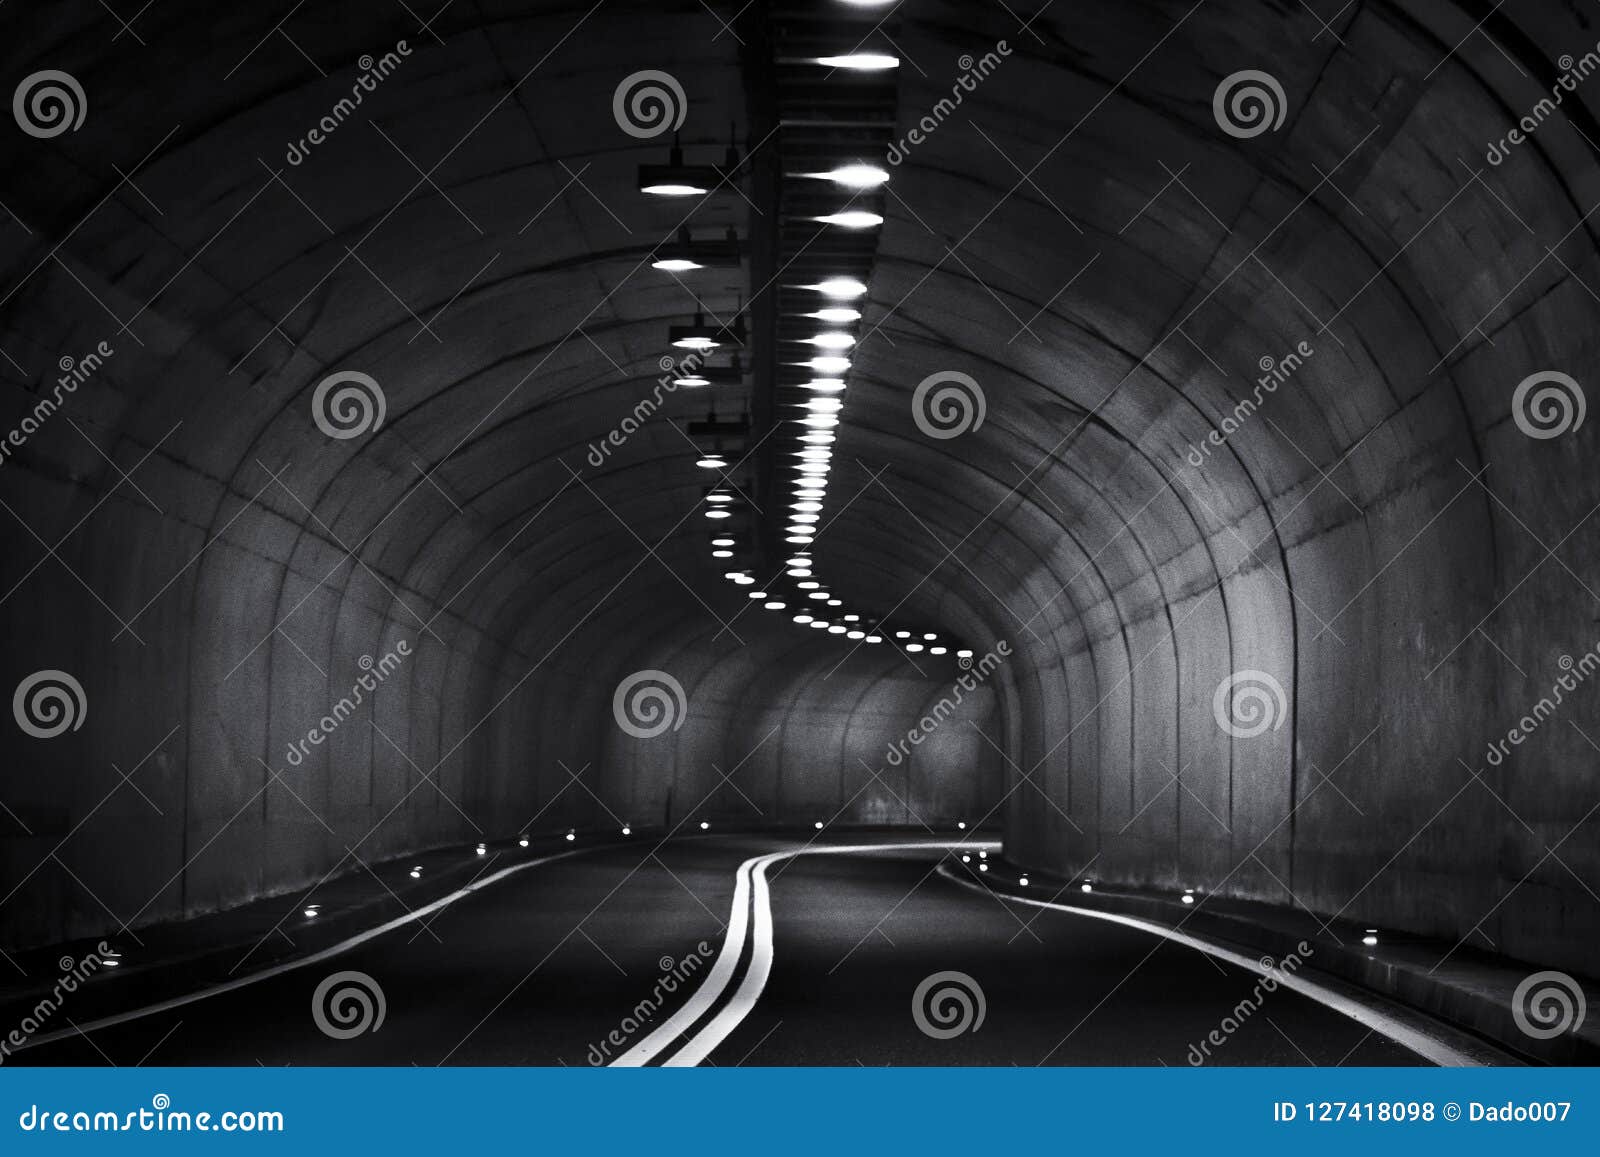 tunel fantastico